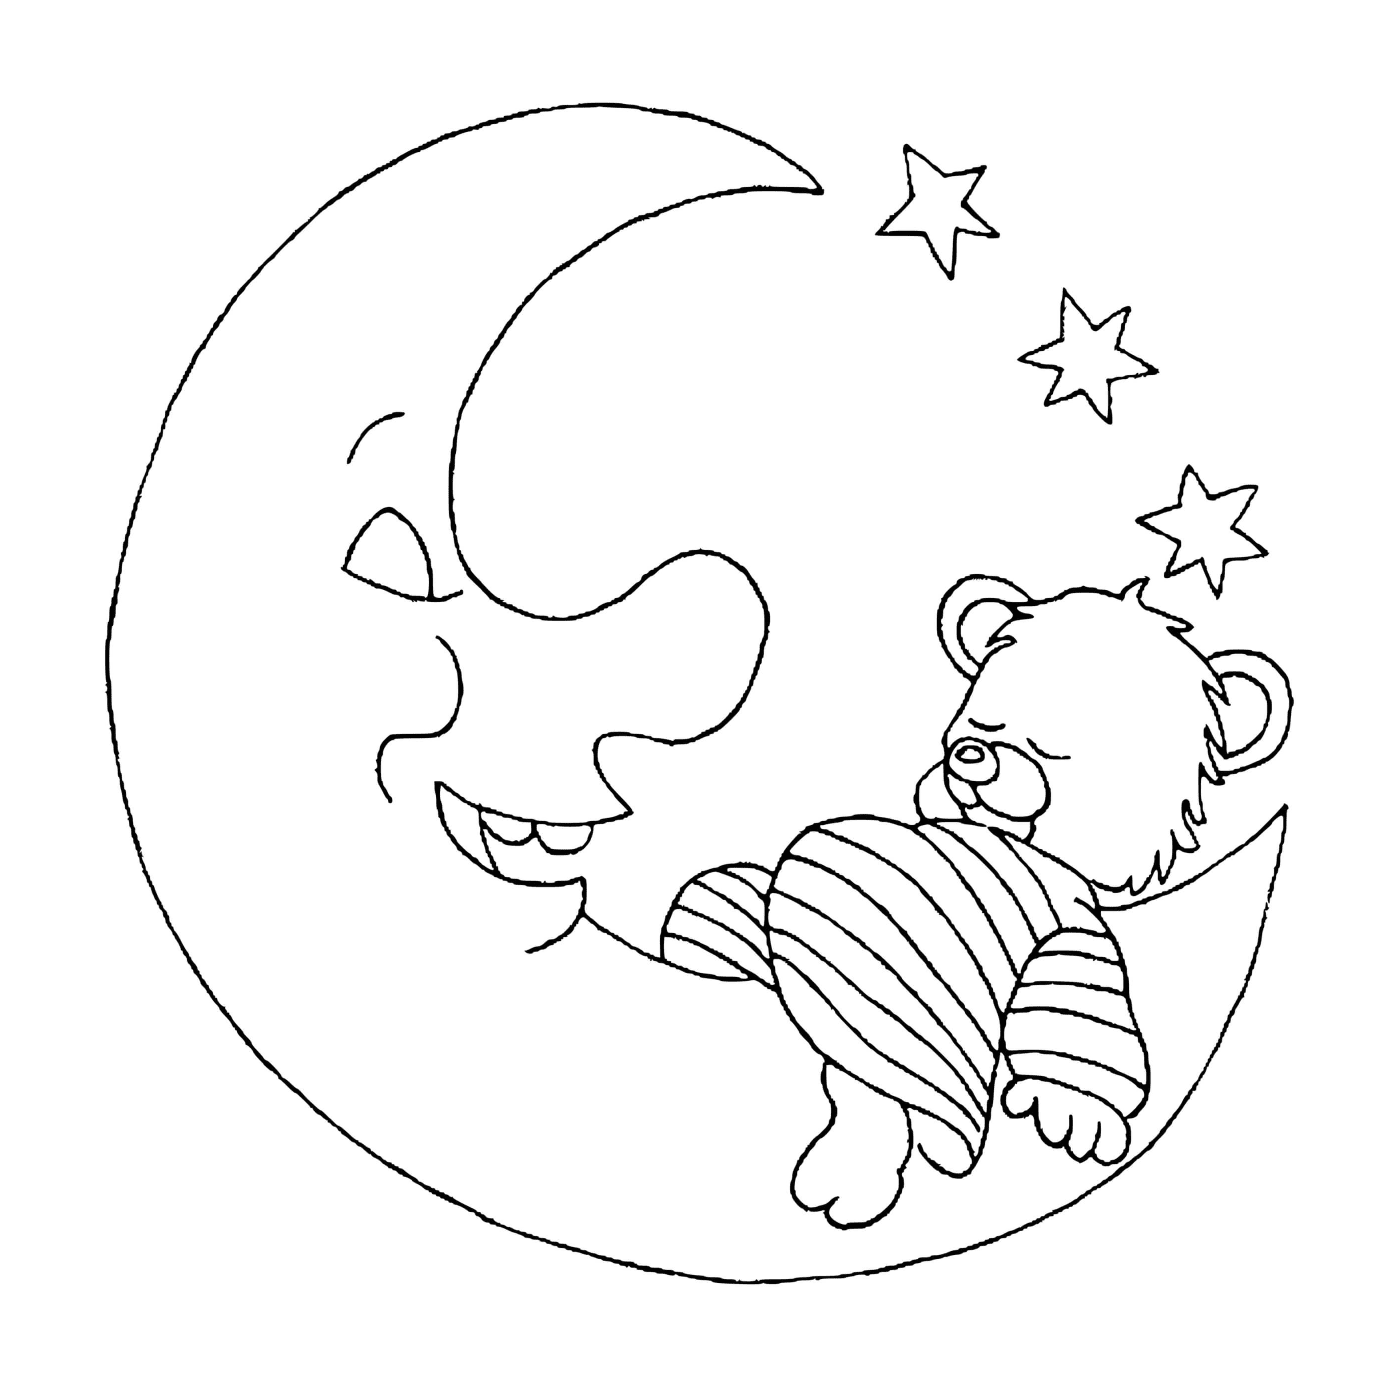  Teddy bear sleeping on the moon 